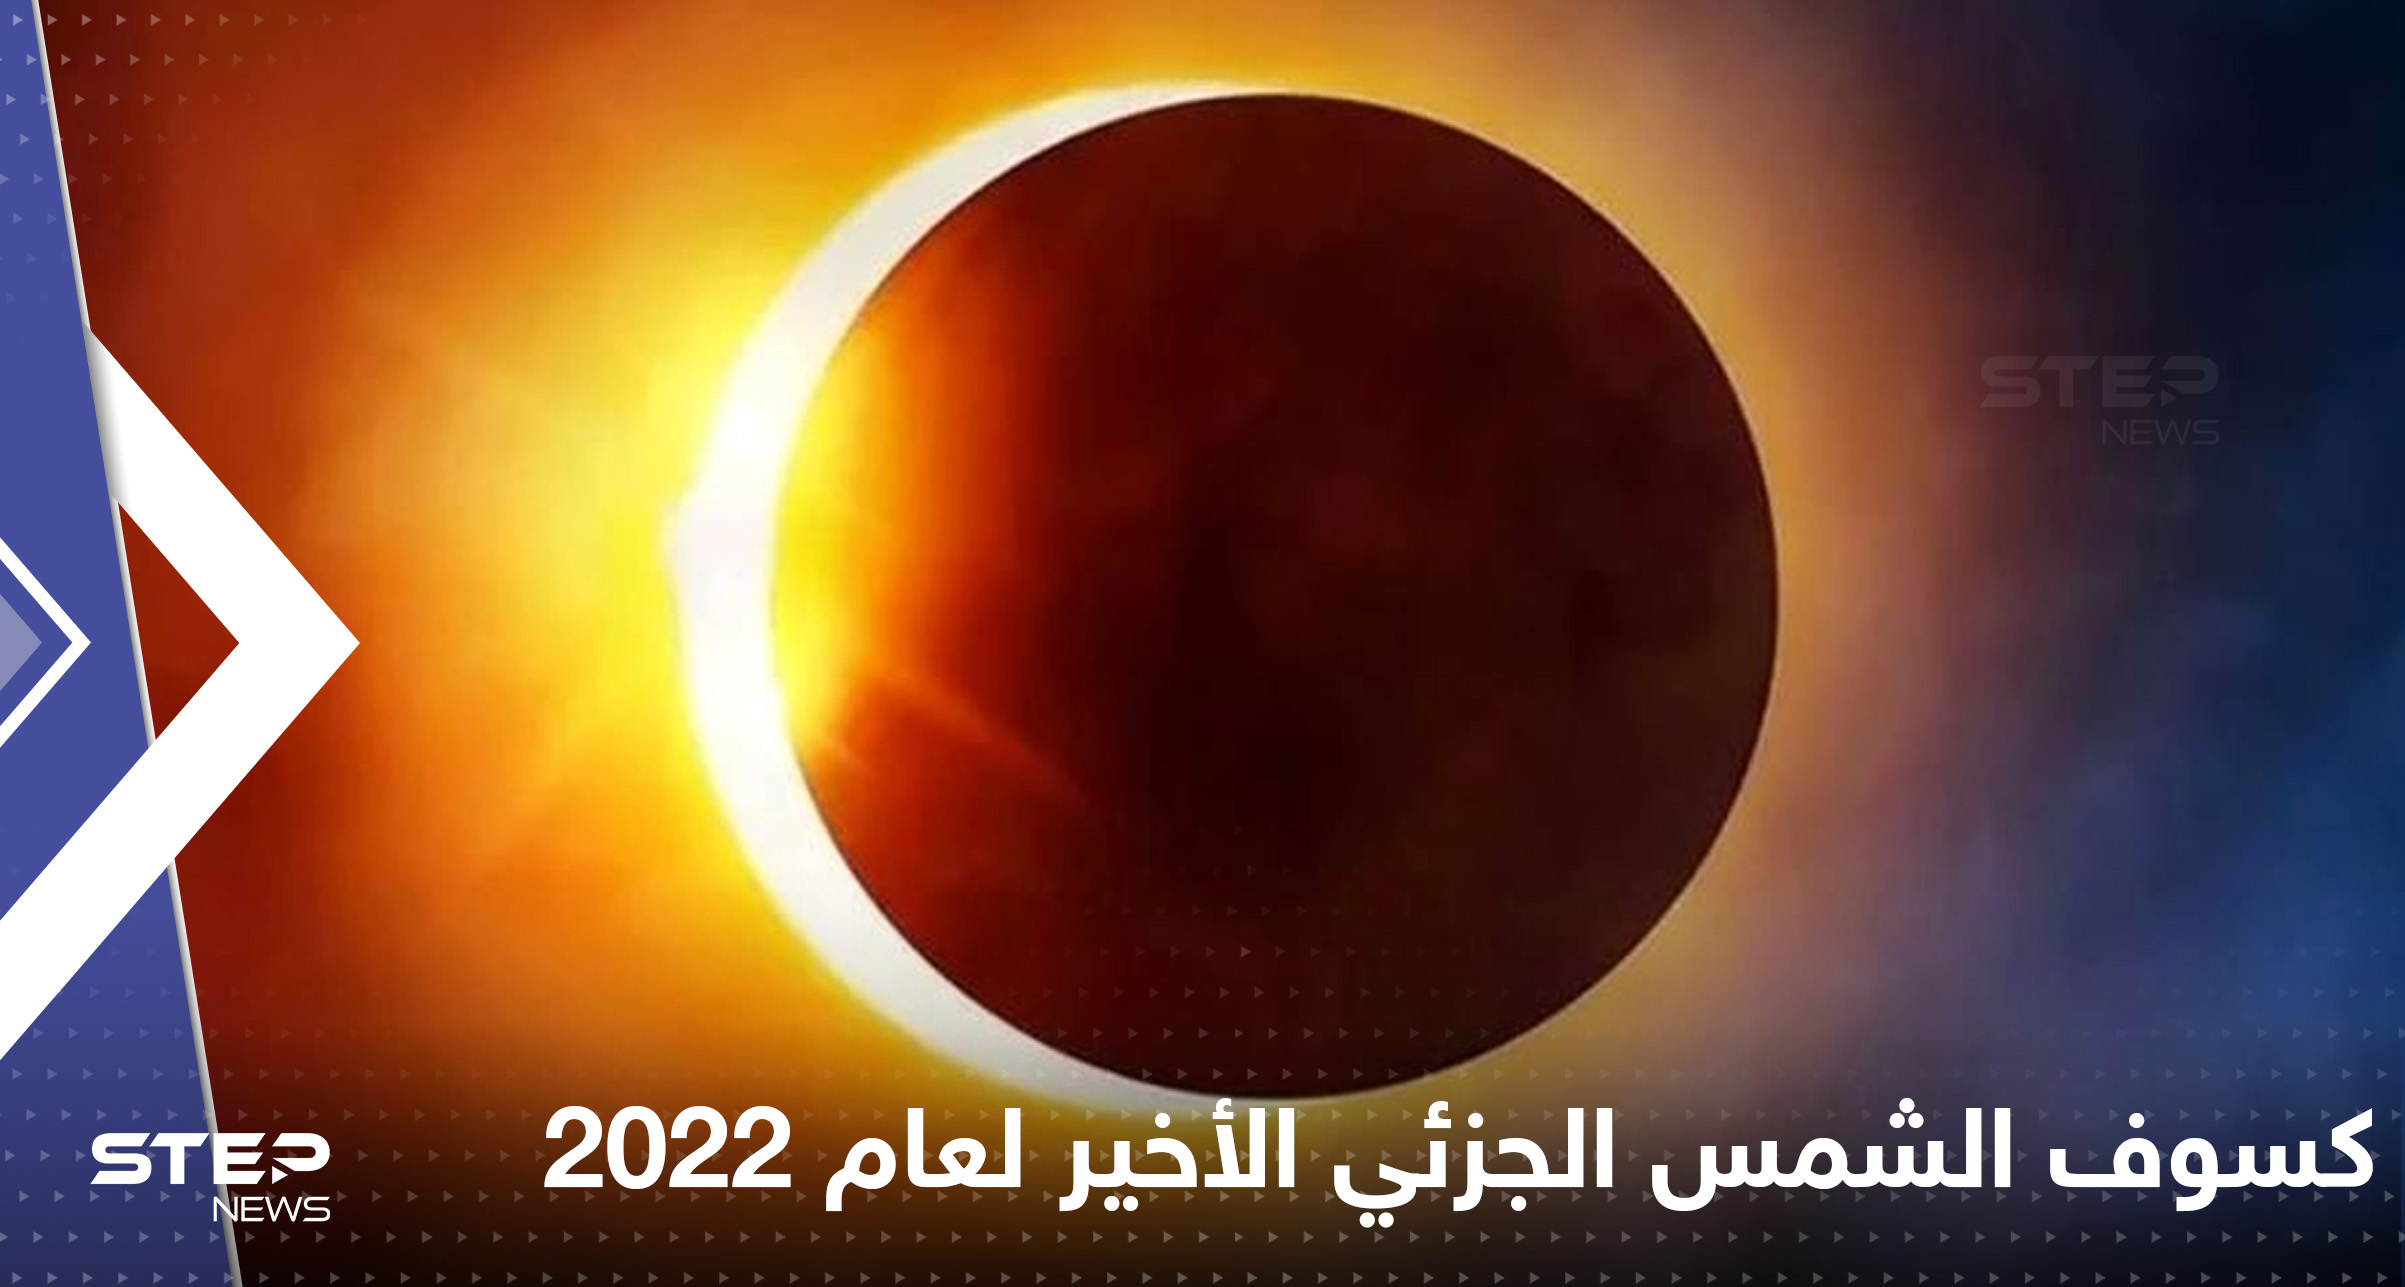 كسوف الشمس الجزئي الأخير لعام 2022